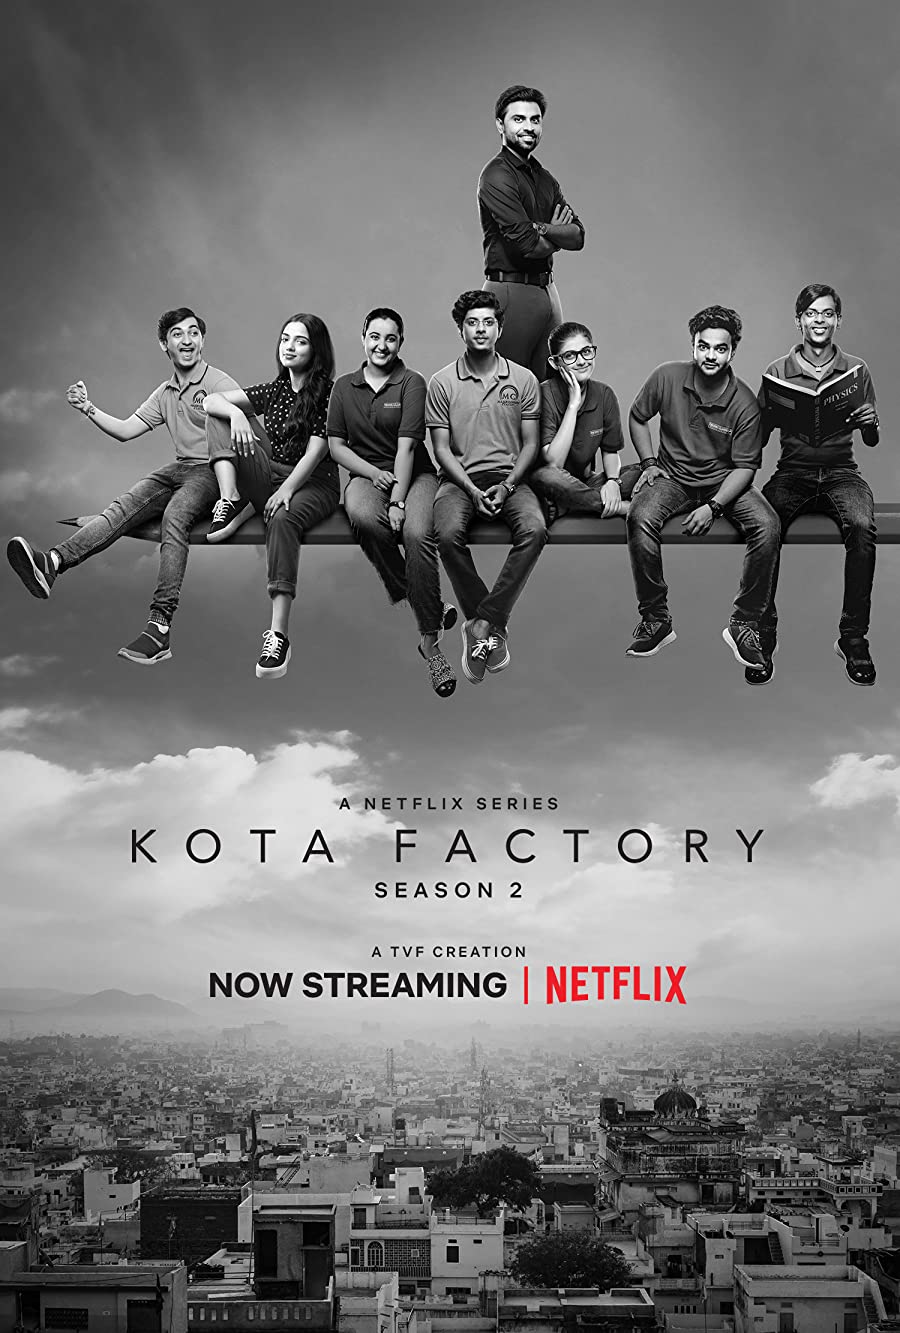 دانلود سریال Kota Factory